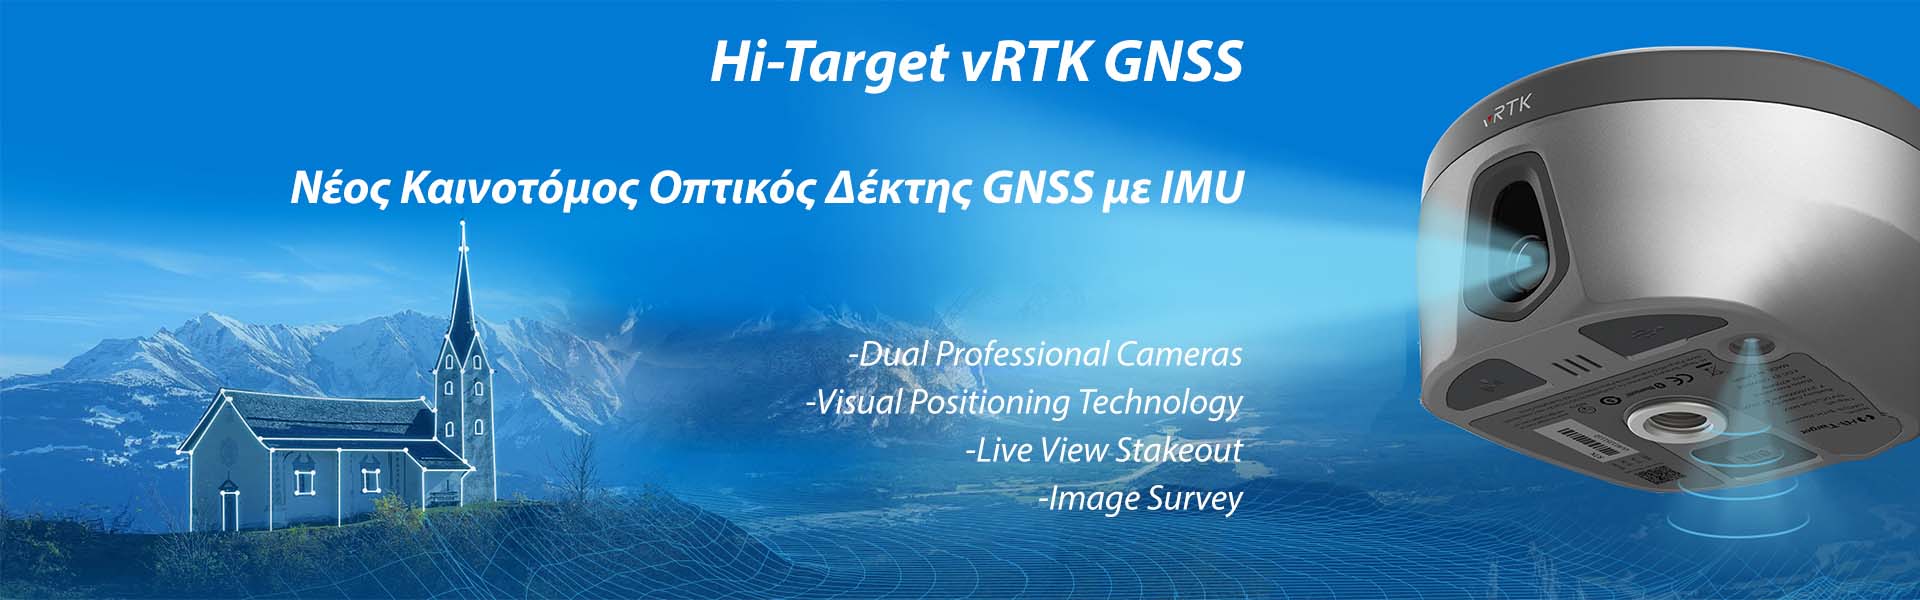 Νέος Δέκτης GNSS Hi-Target, vRTK